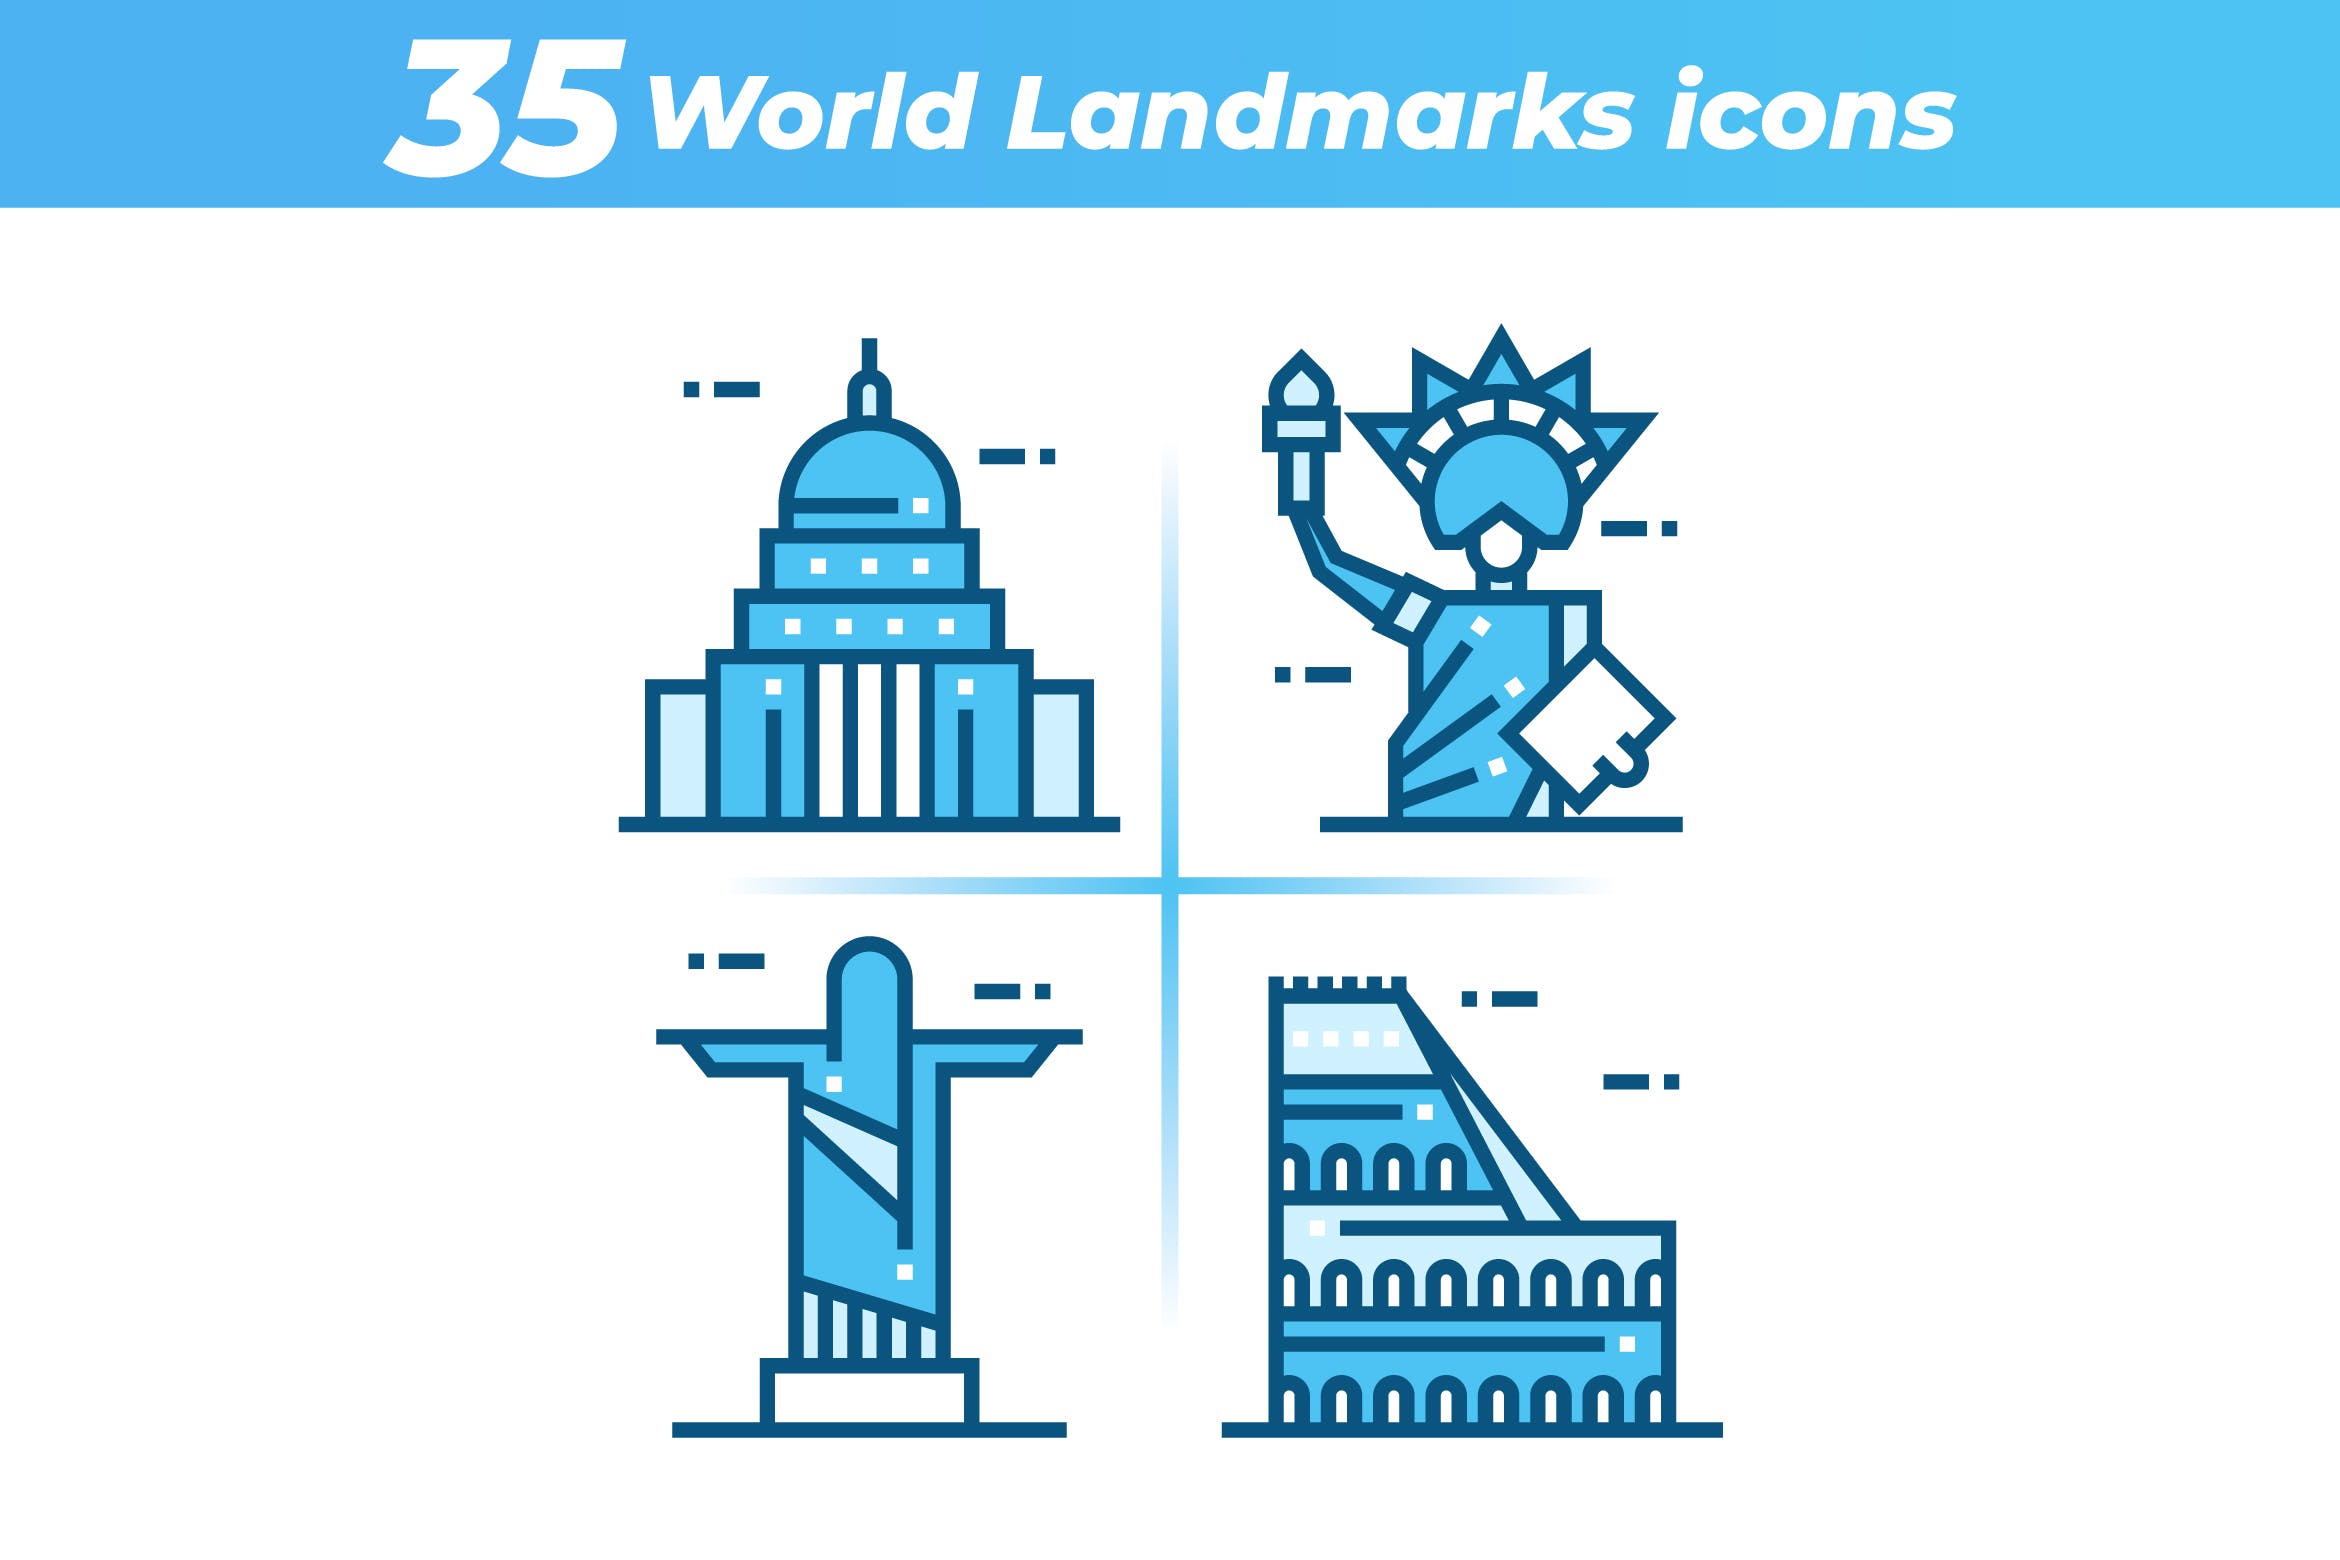 35枚世界地标主题矢量蚂蚁素材精选图标 35 World Landmarks Icons插图